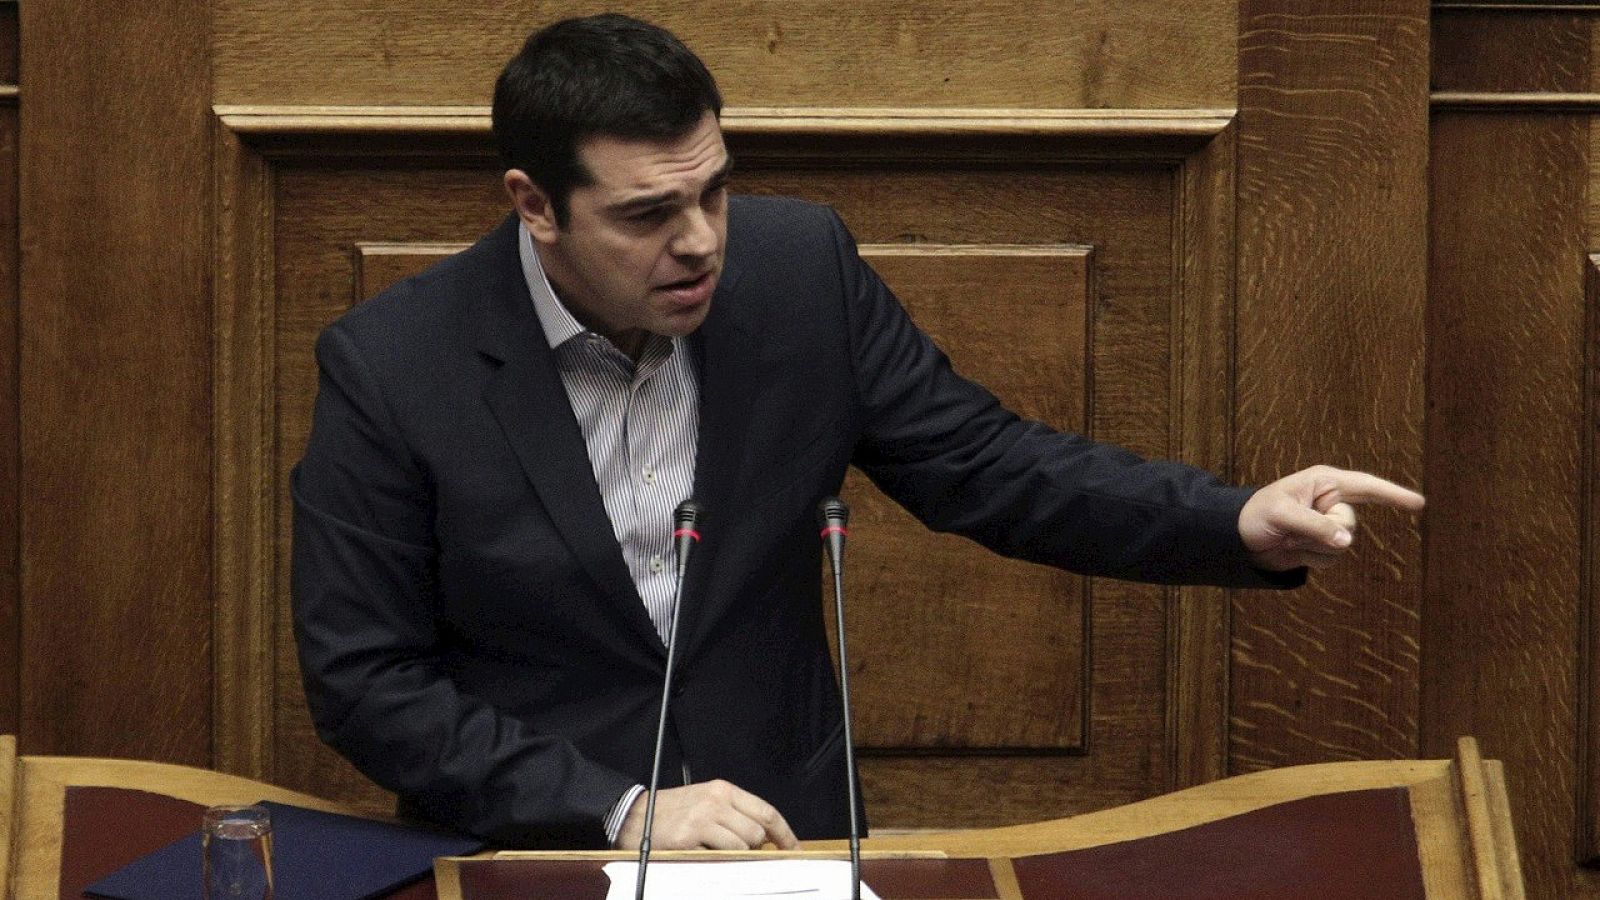 El primer ministro griego, Alexis Tsipras, durante la sesión de control en el Parlamento en Atenas (Grecia), el 30 de octubre de 2015. EFE/Alexandros Vlachos